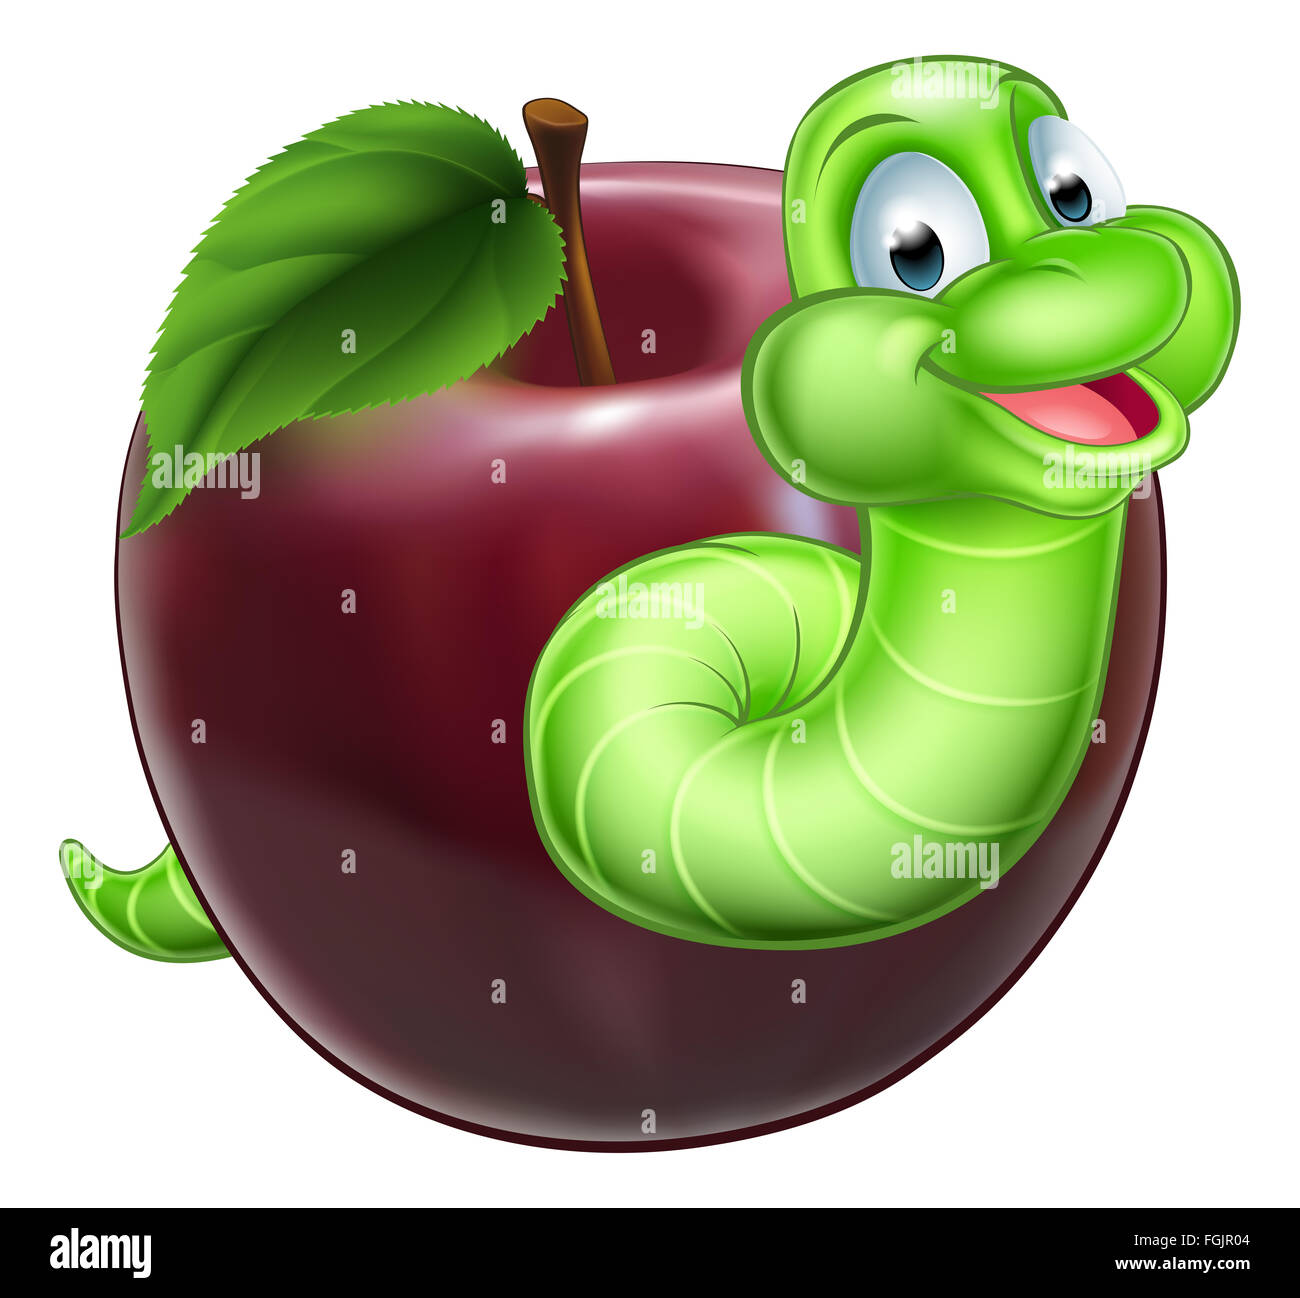 Cartoon caterpillar hi-res stock photography and images - Alamy